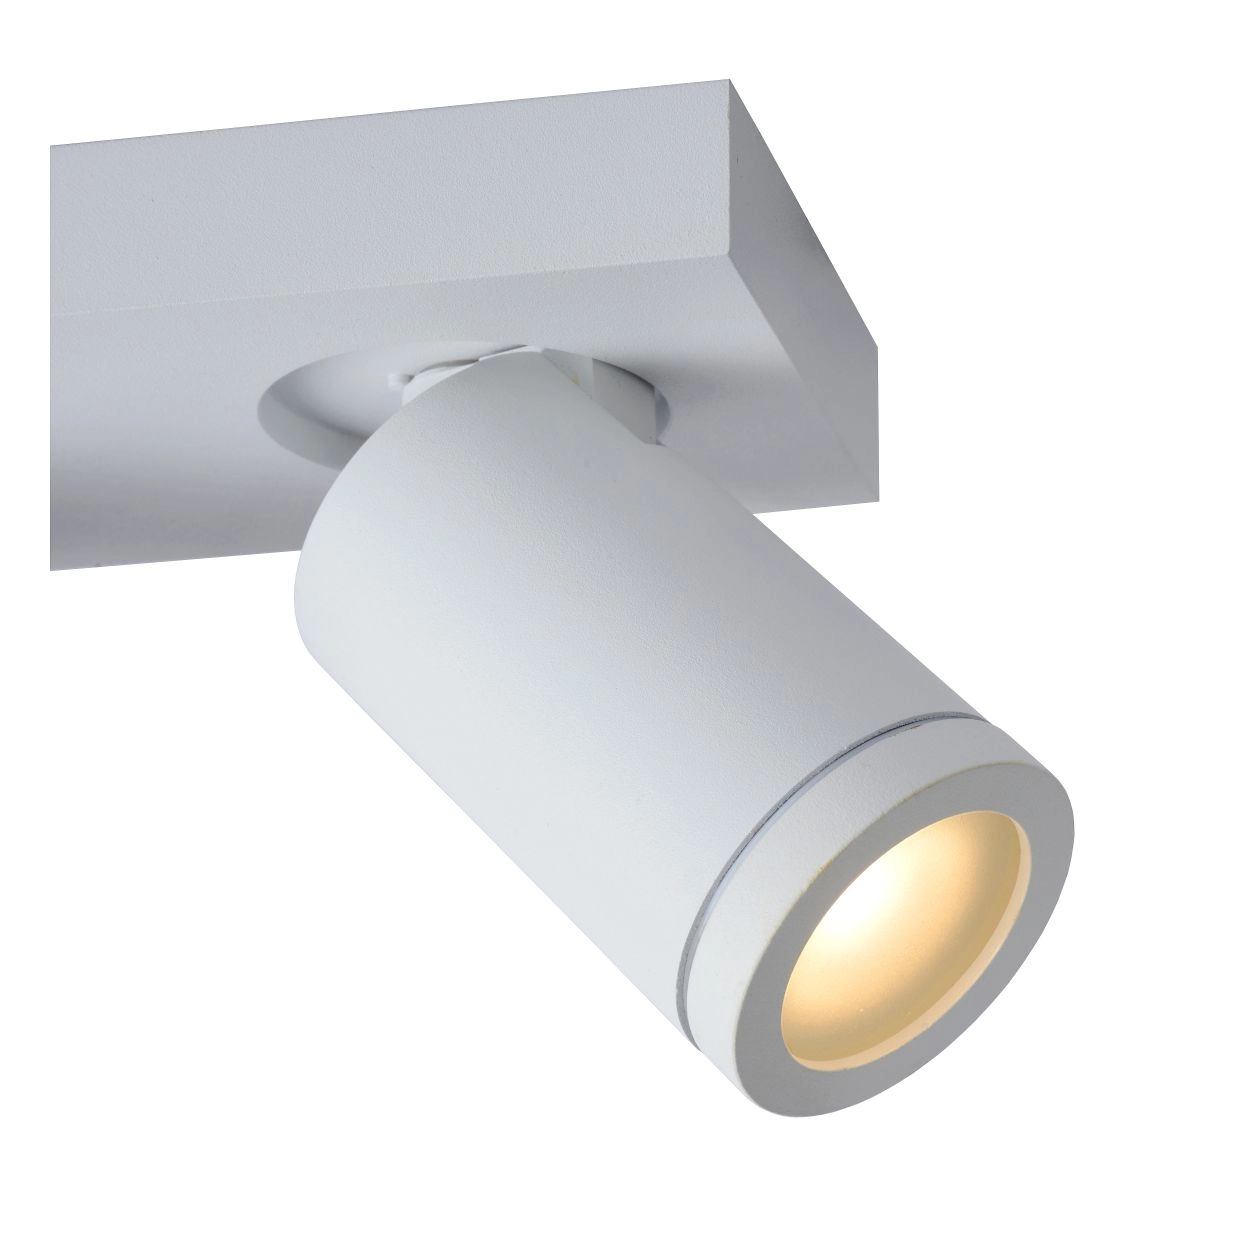 LU 09930/15/31 Lucide TAYLOR - Ceiling spotlight Bathroom - LED Dim to warm - GU10 - 3x5W 2200K/3000